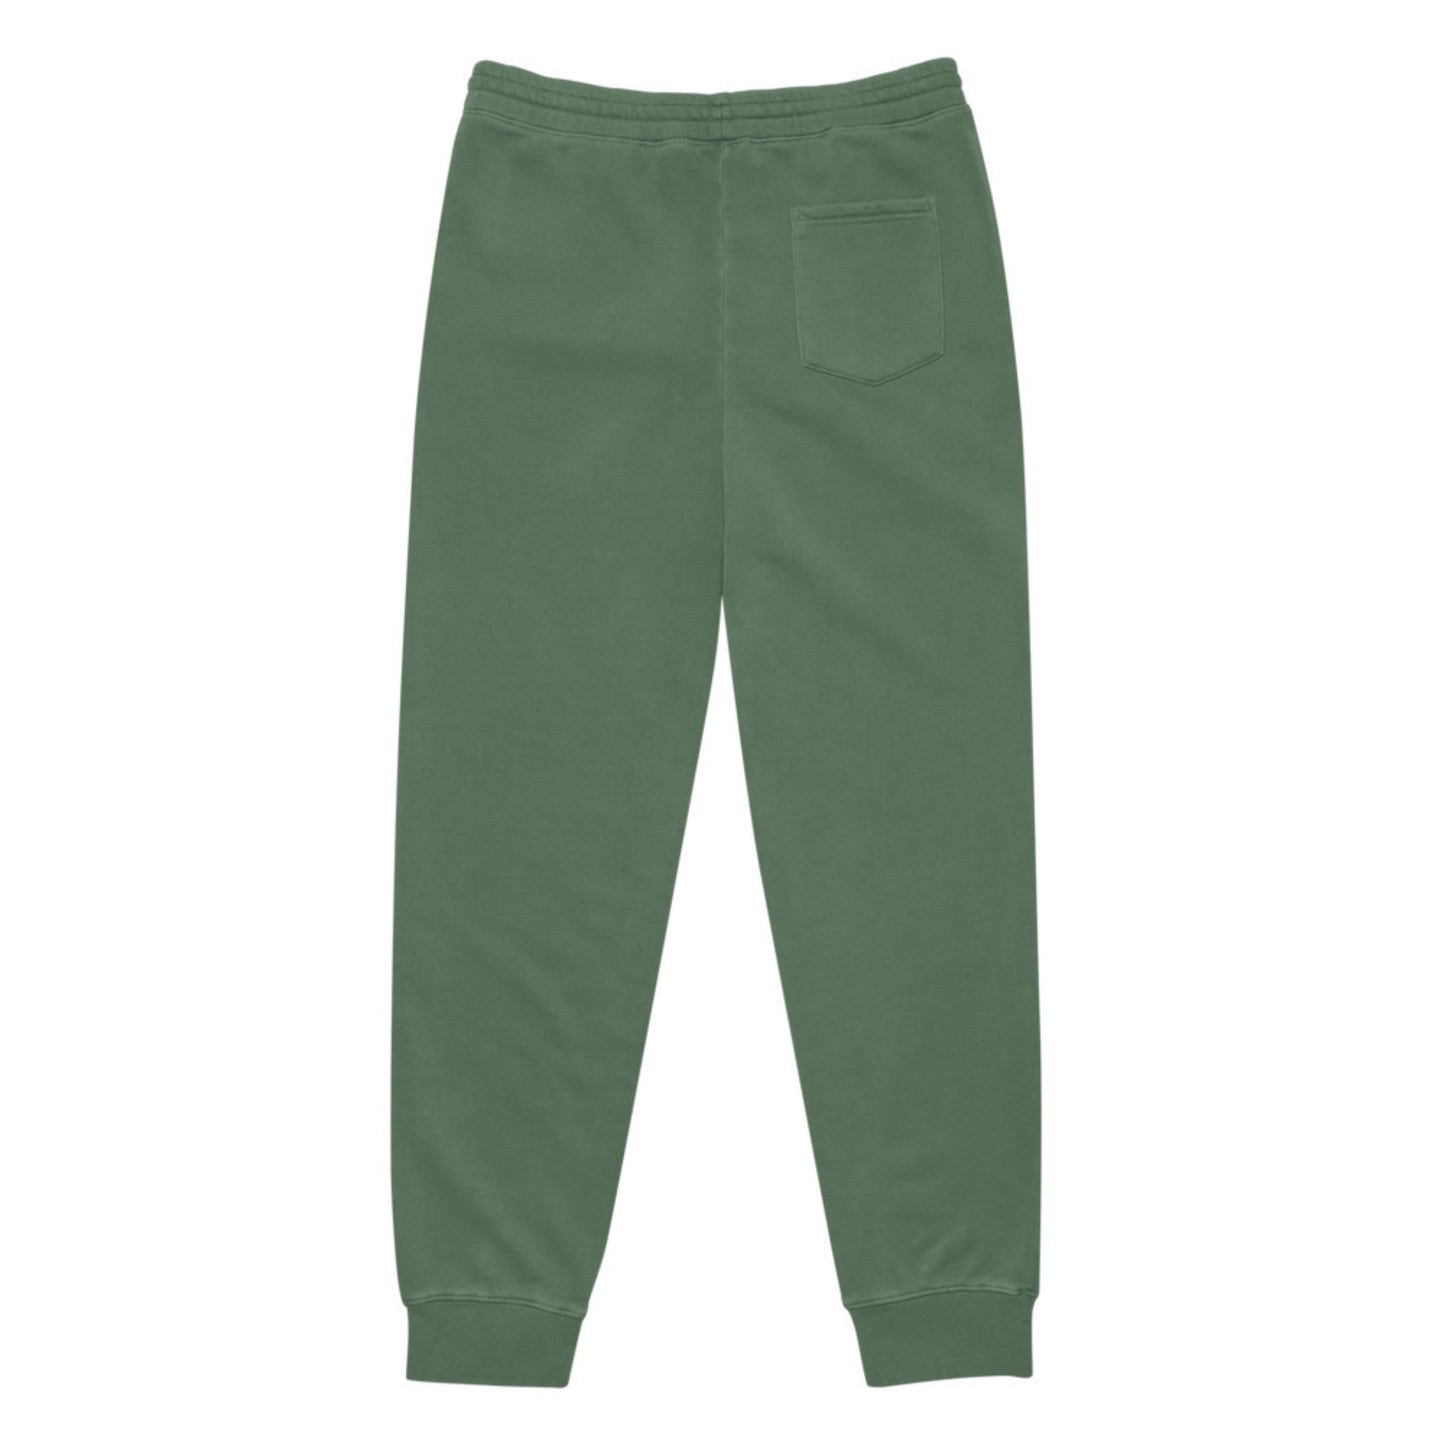 Softwear Sweatpants in Evergreen